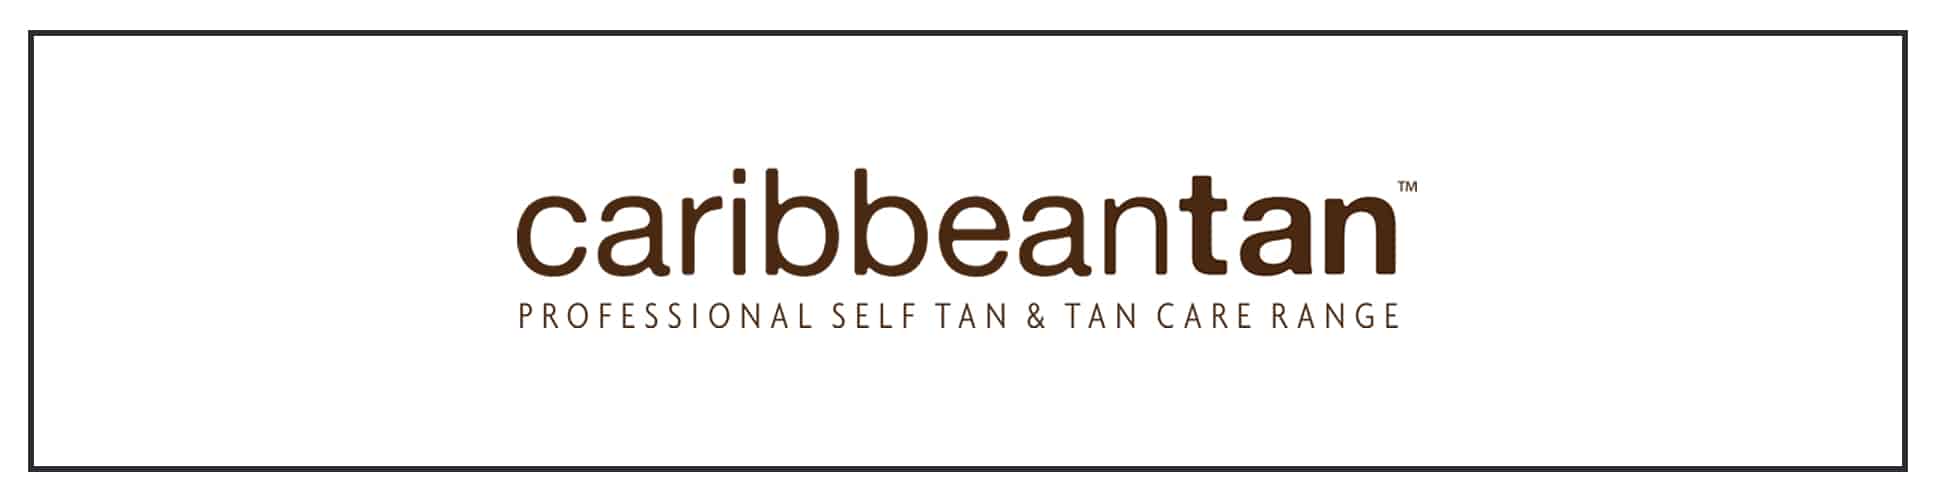 Caribbean tanning - caribbean tanning - caribbean tanning - caribbean tanning.